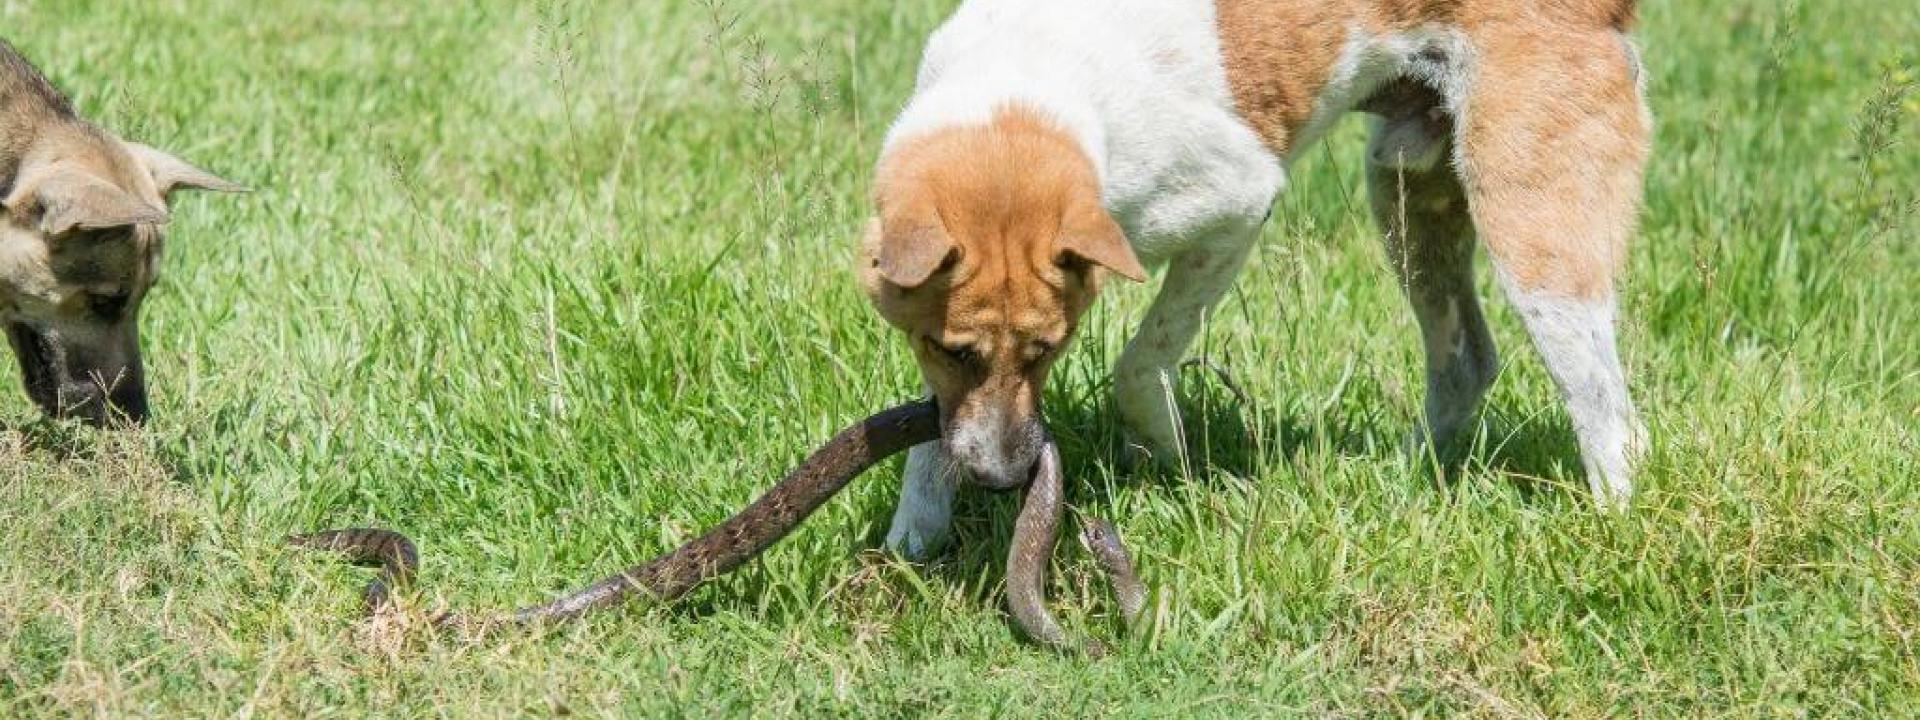 protect-dogs-snake-bites.jpg